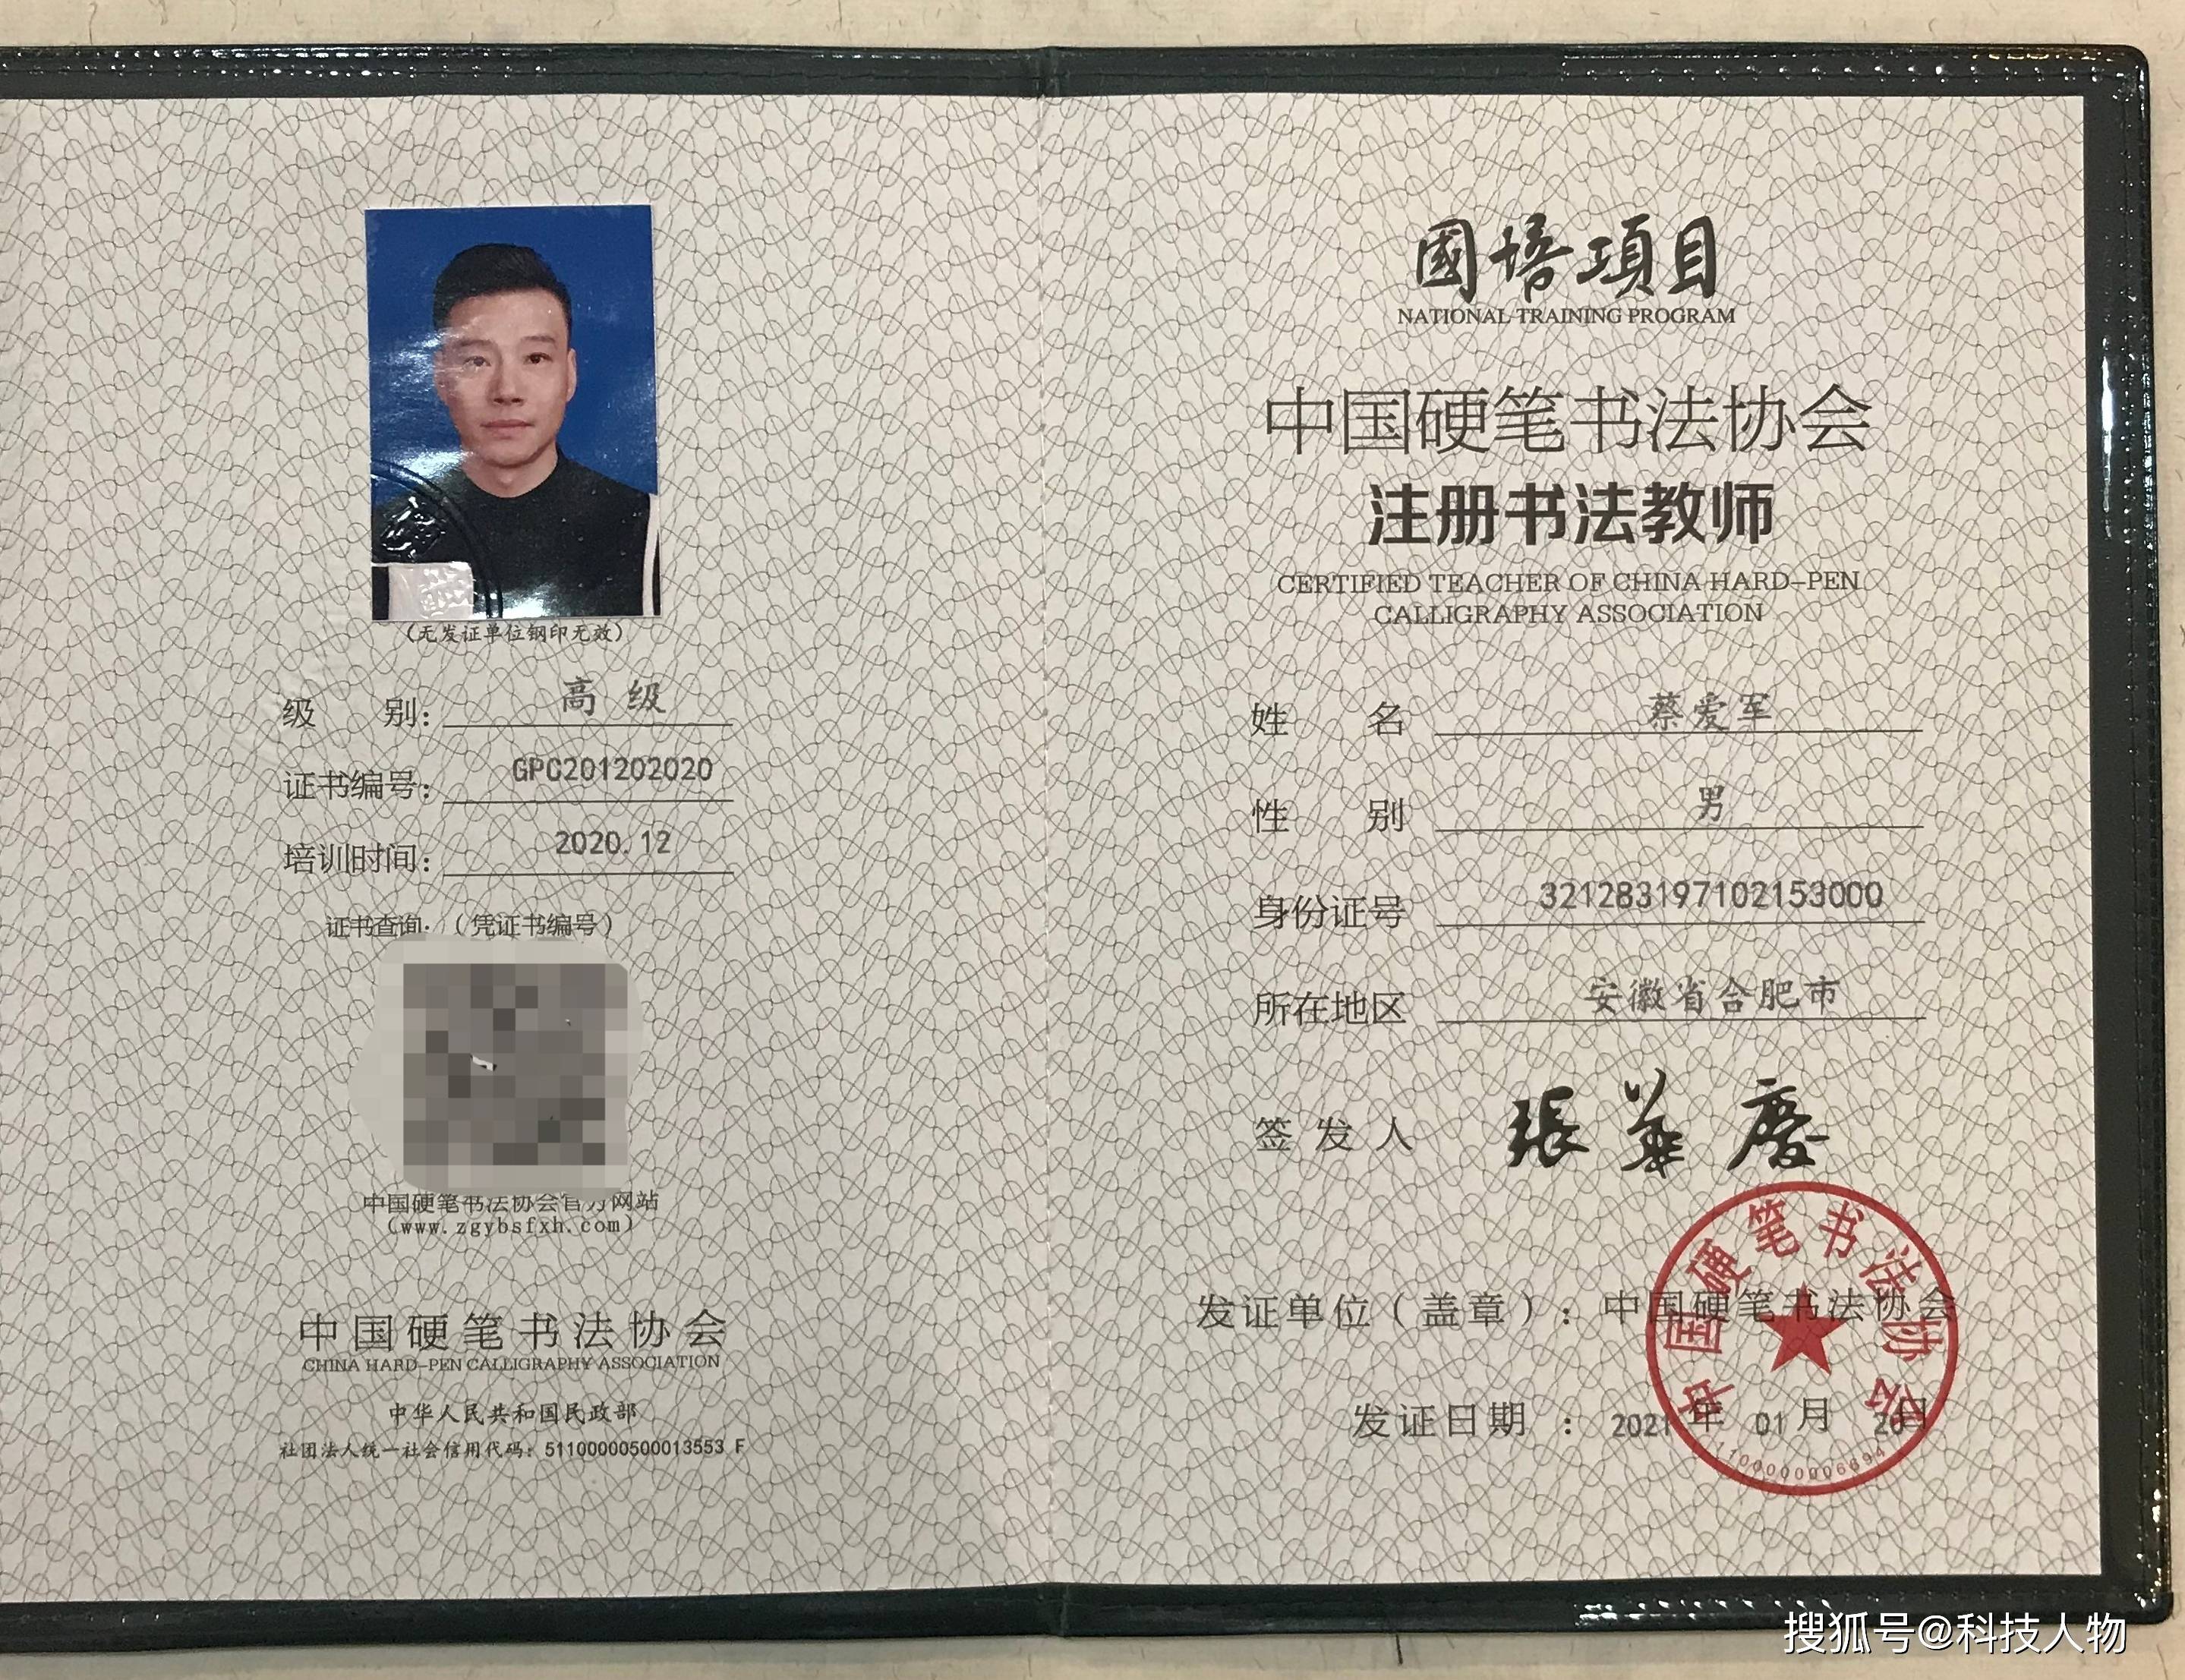 蔡爱军获得中国硬笔书法协会高级教师资格证等证书